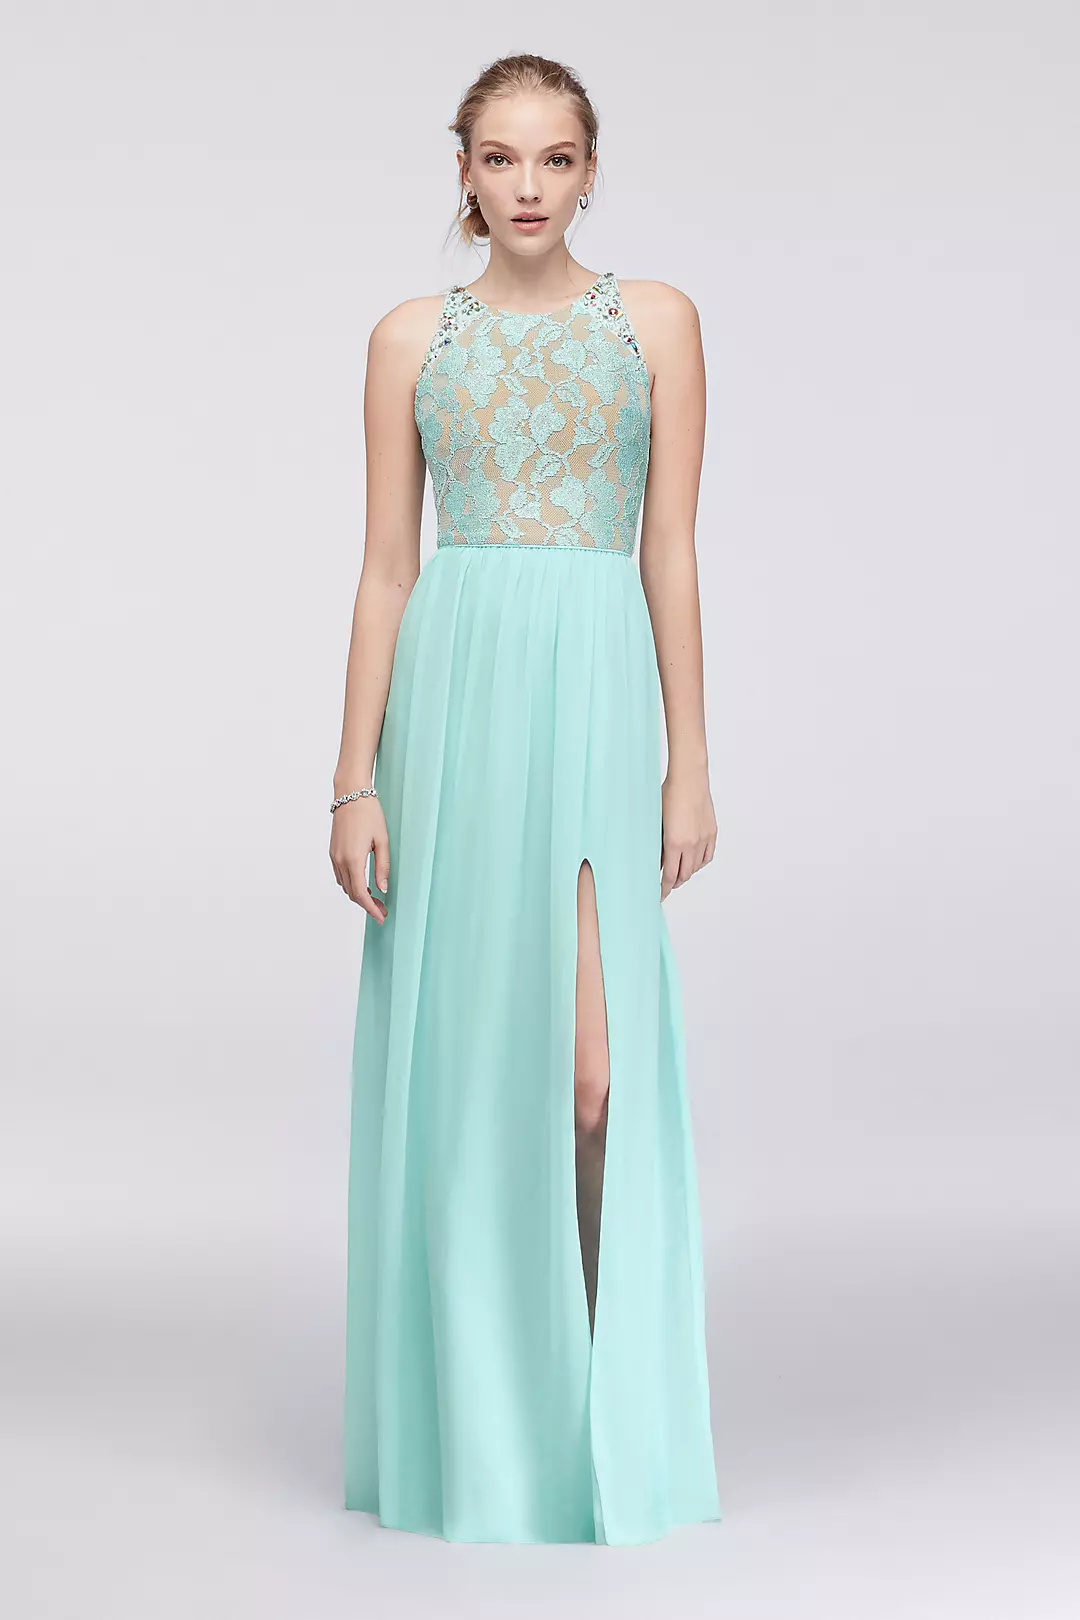 Sleeveless Glitter Lace and Chiffon Dress Image